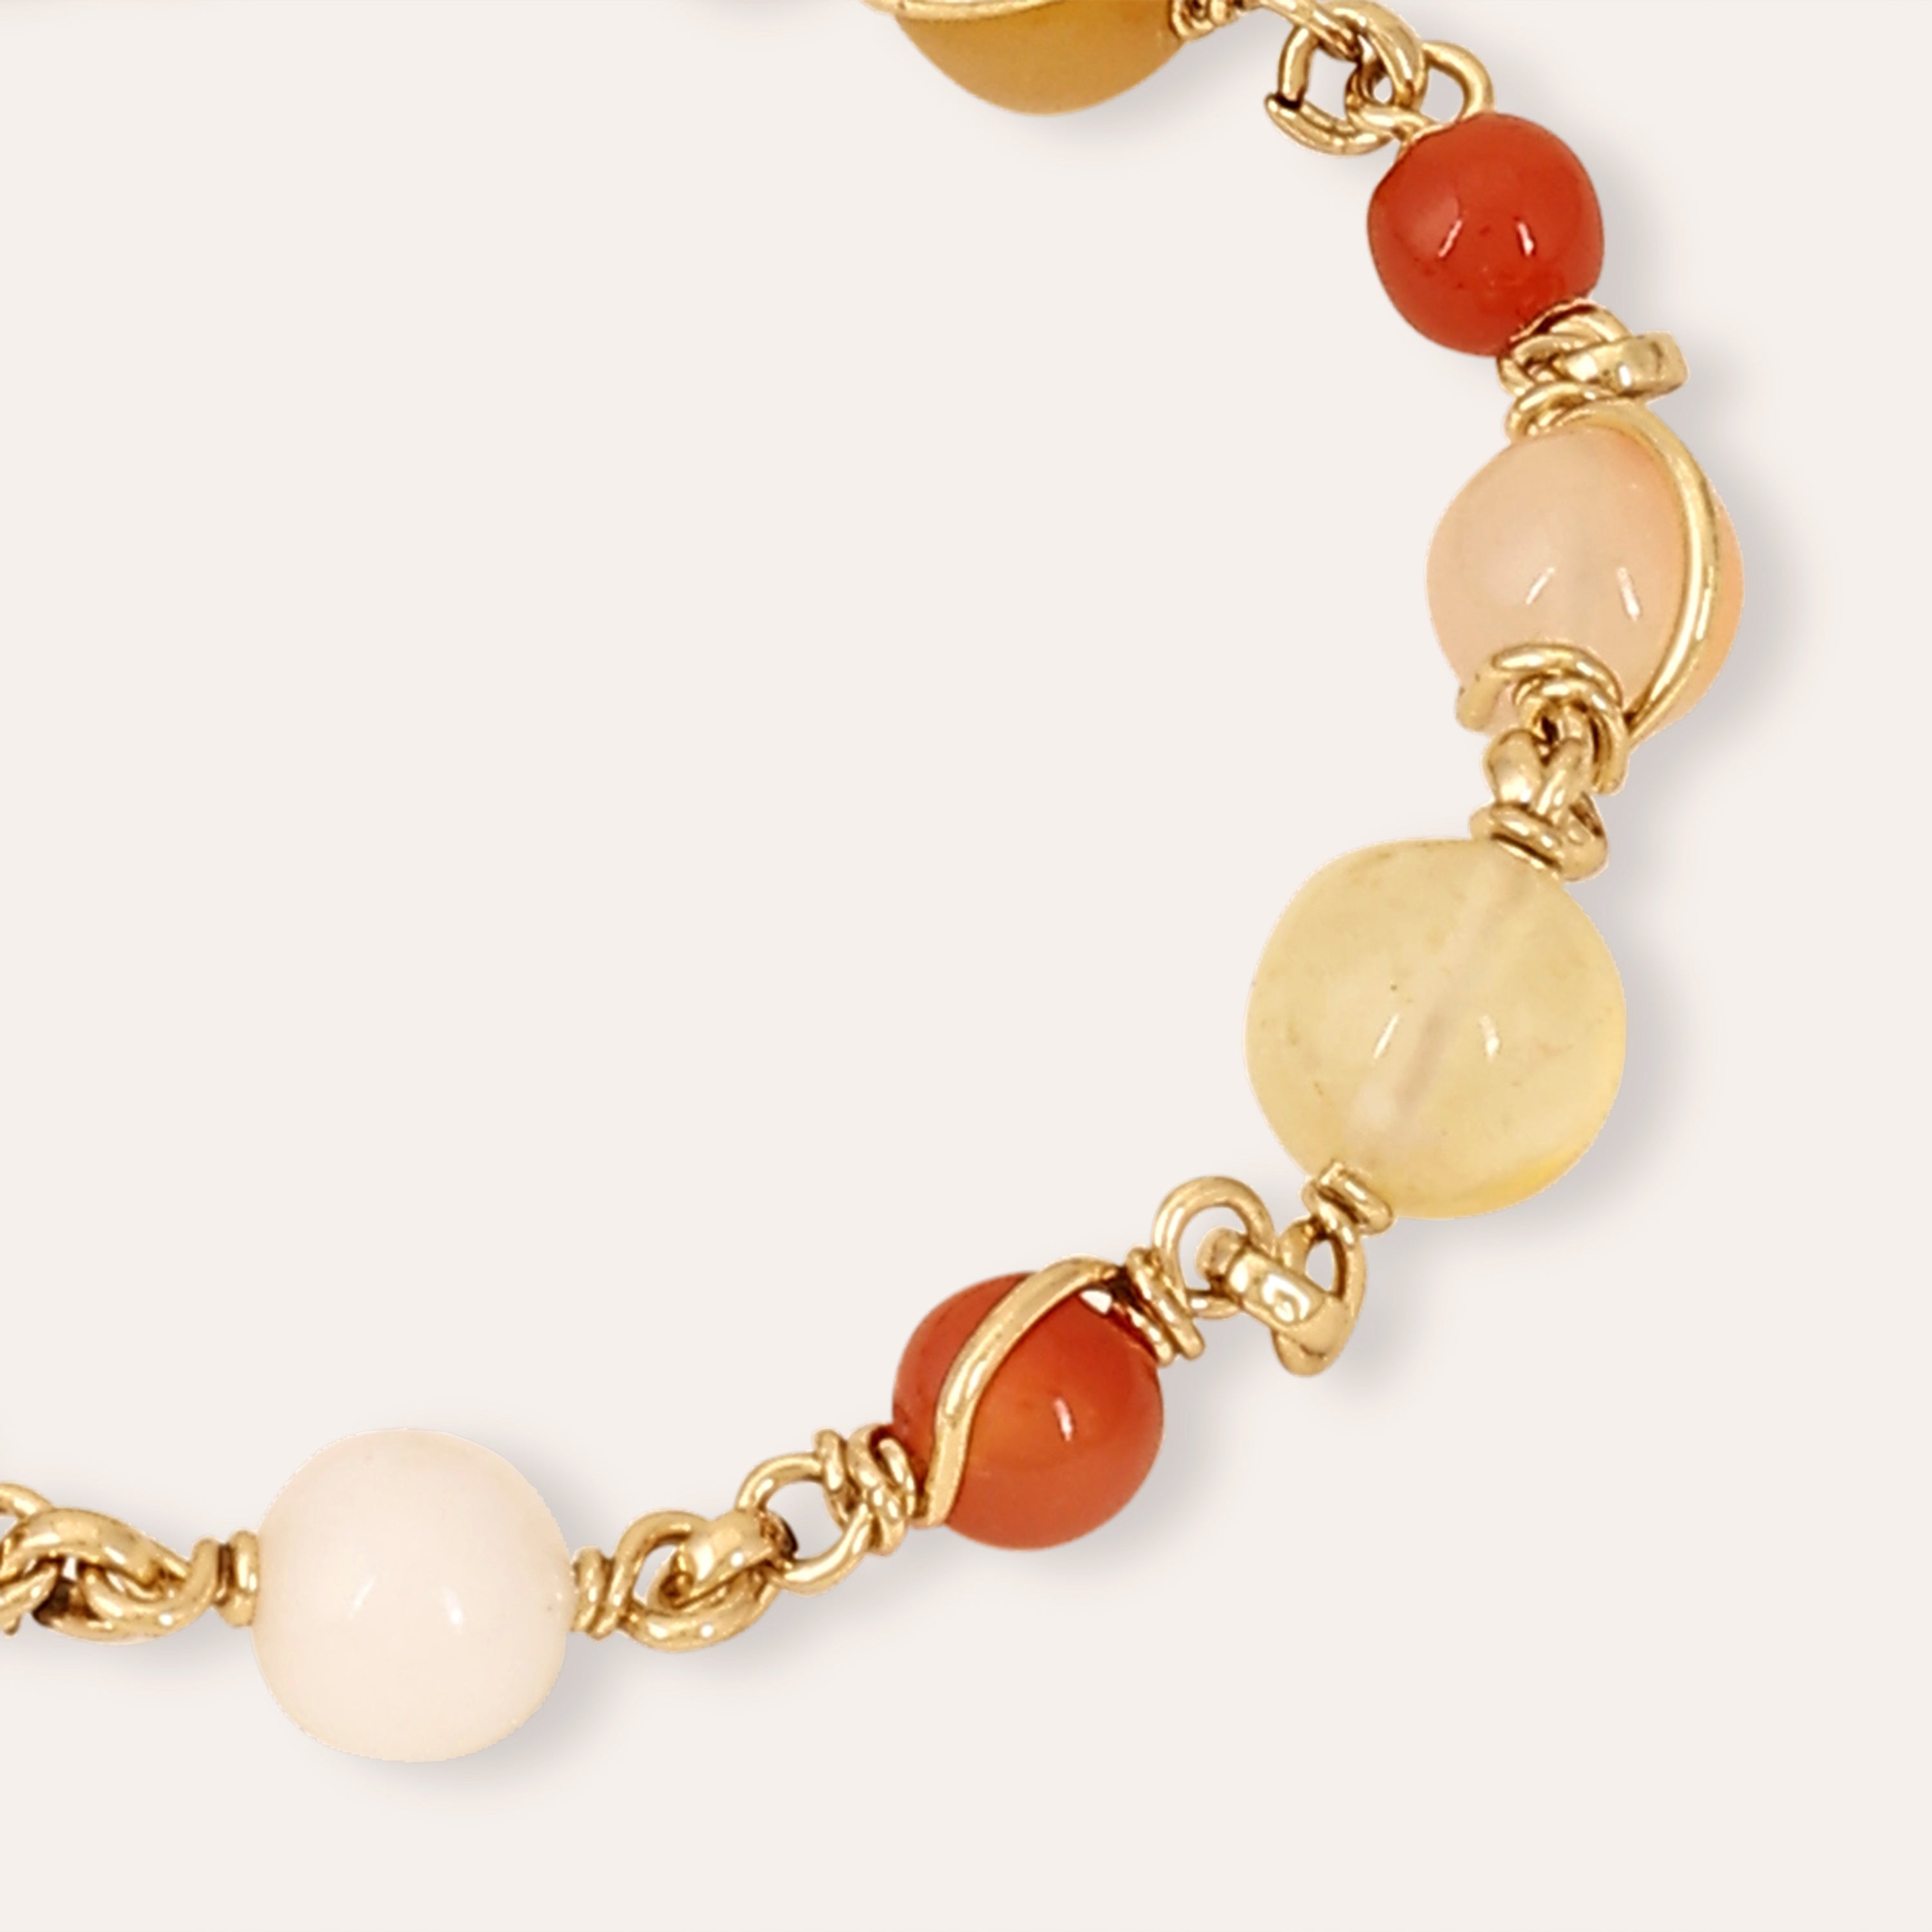 Square & Delicate Chain Bracelet | Colleen Mauer Designs